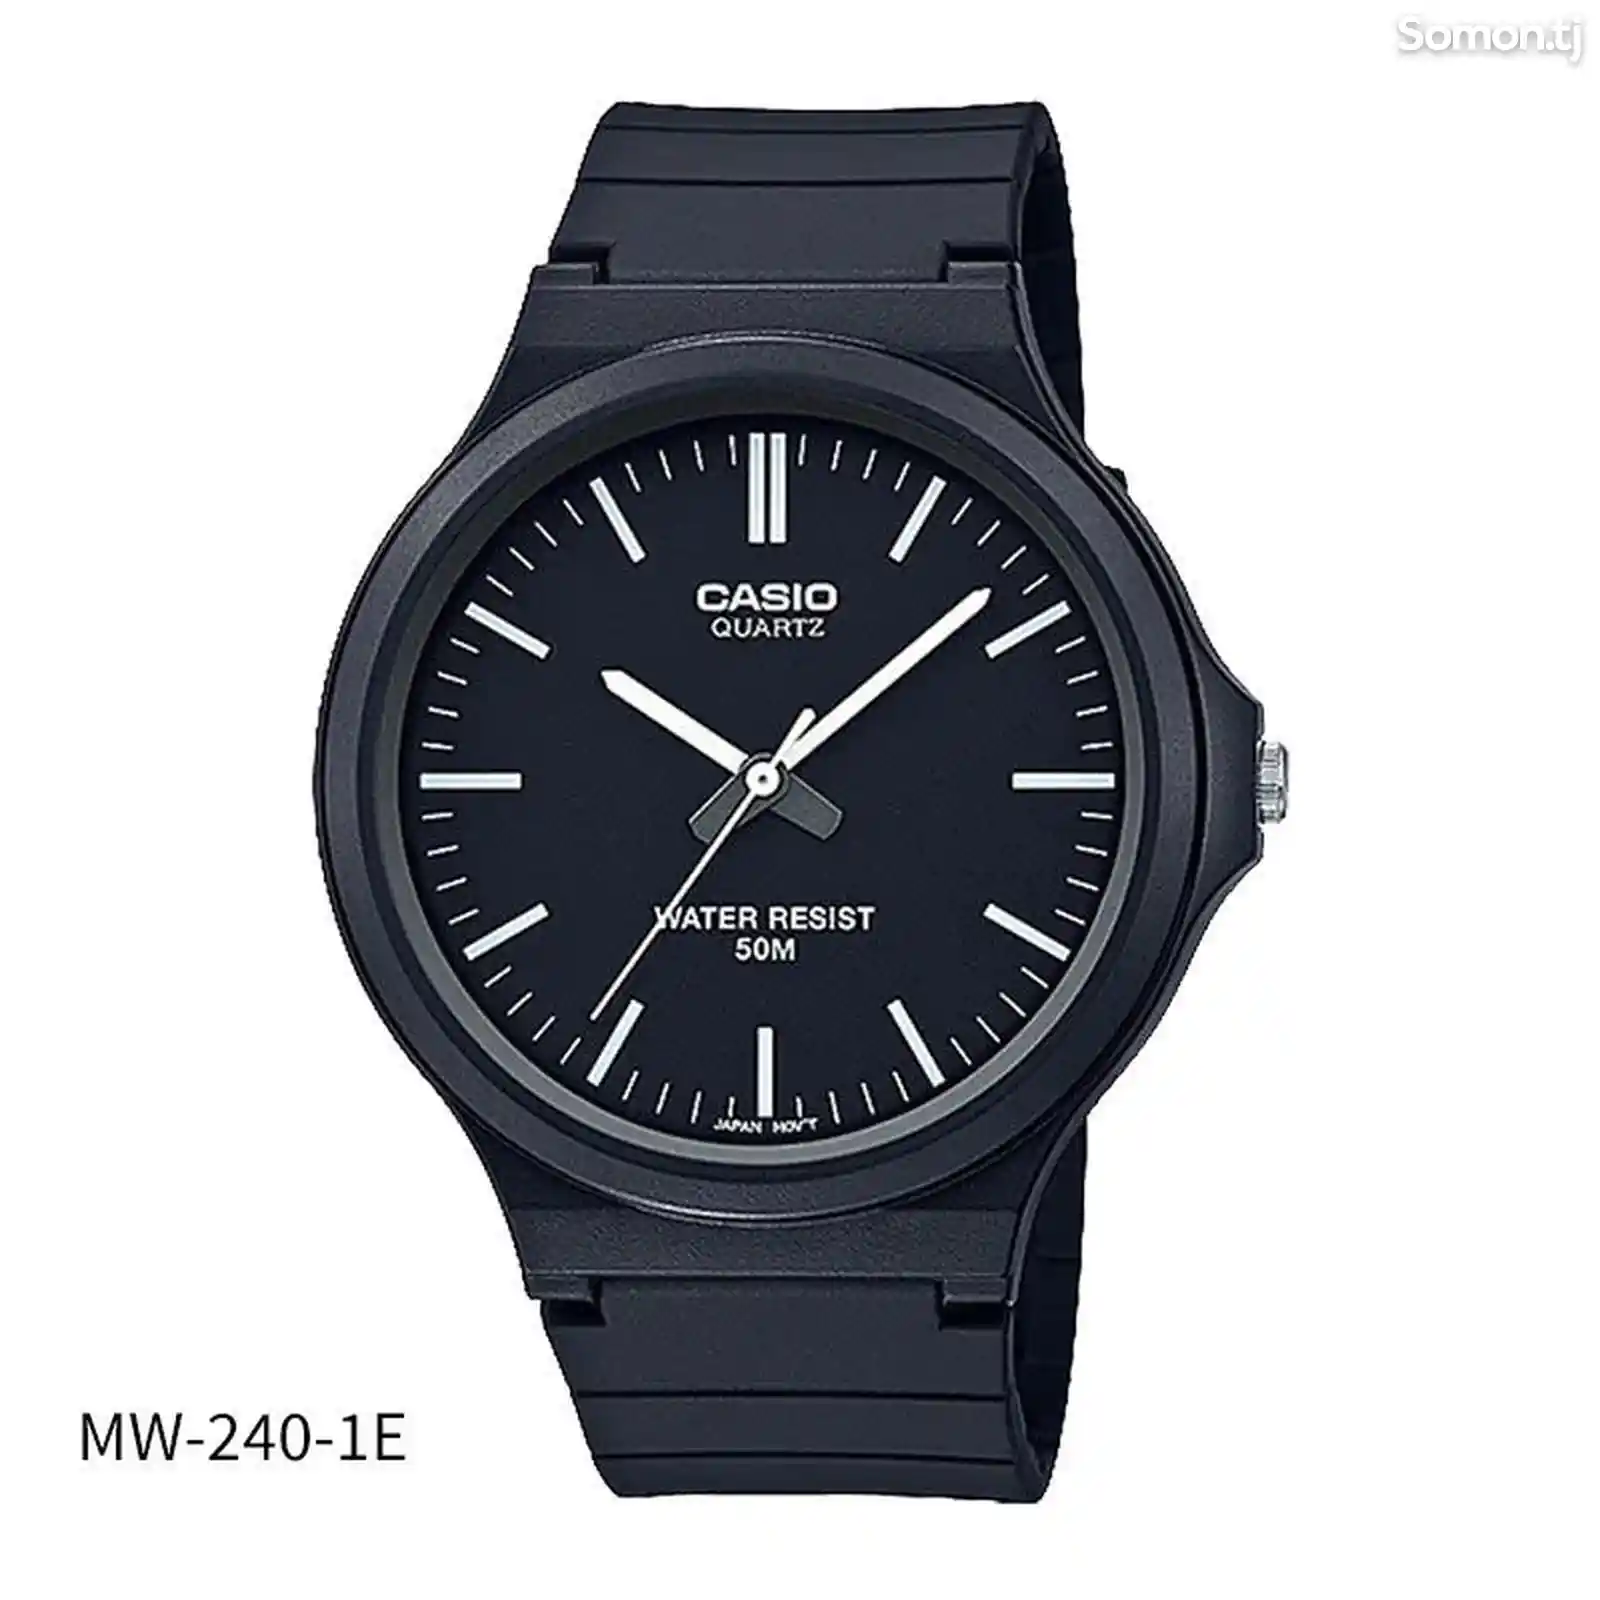 Мужские часы Casio MW-240-1E-1